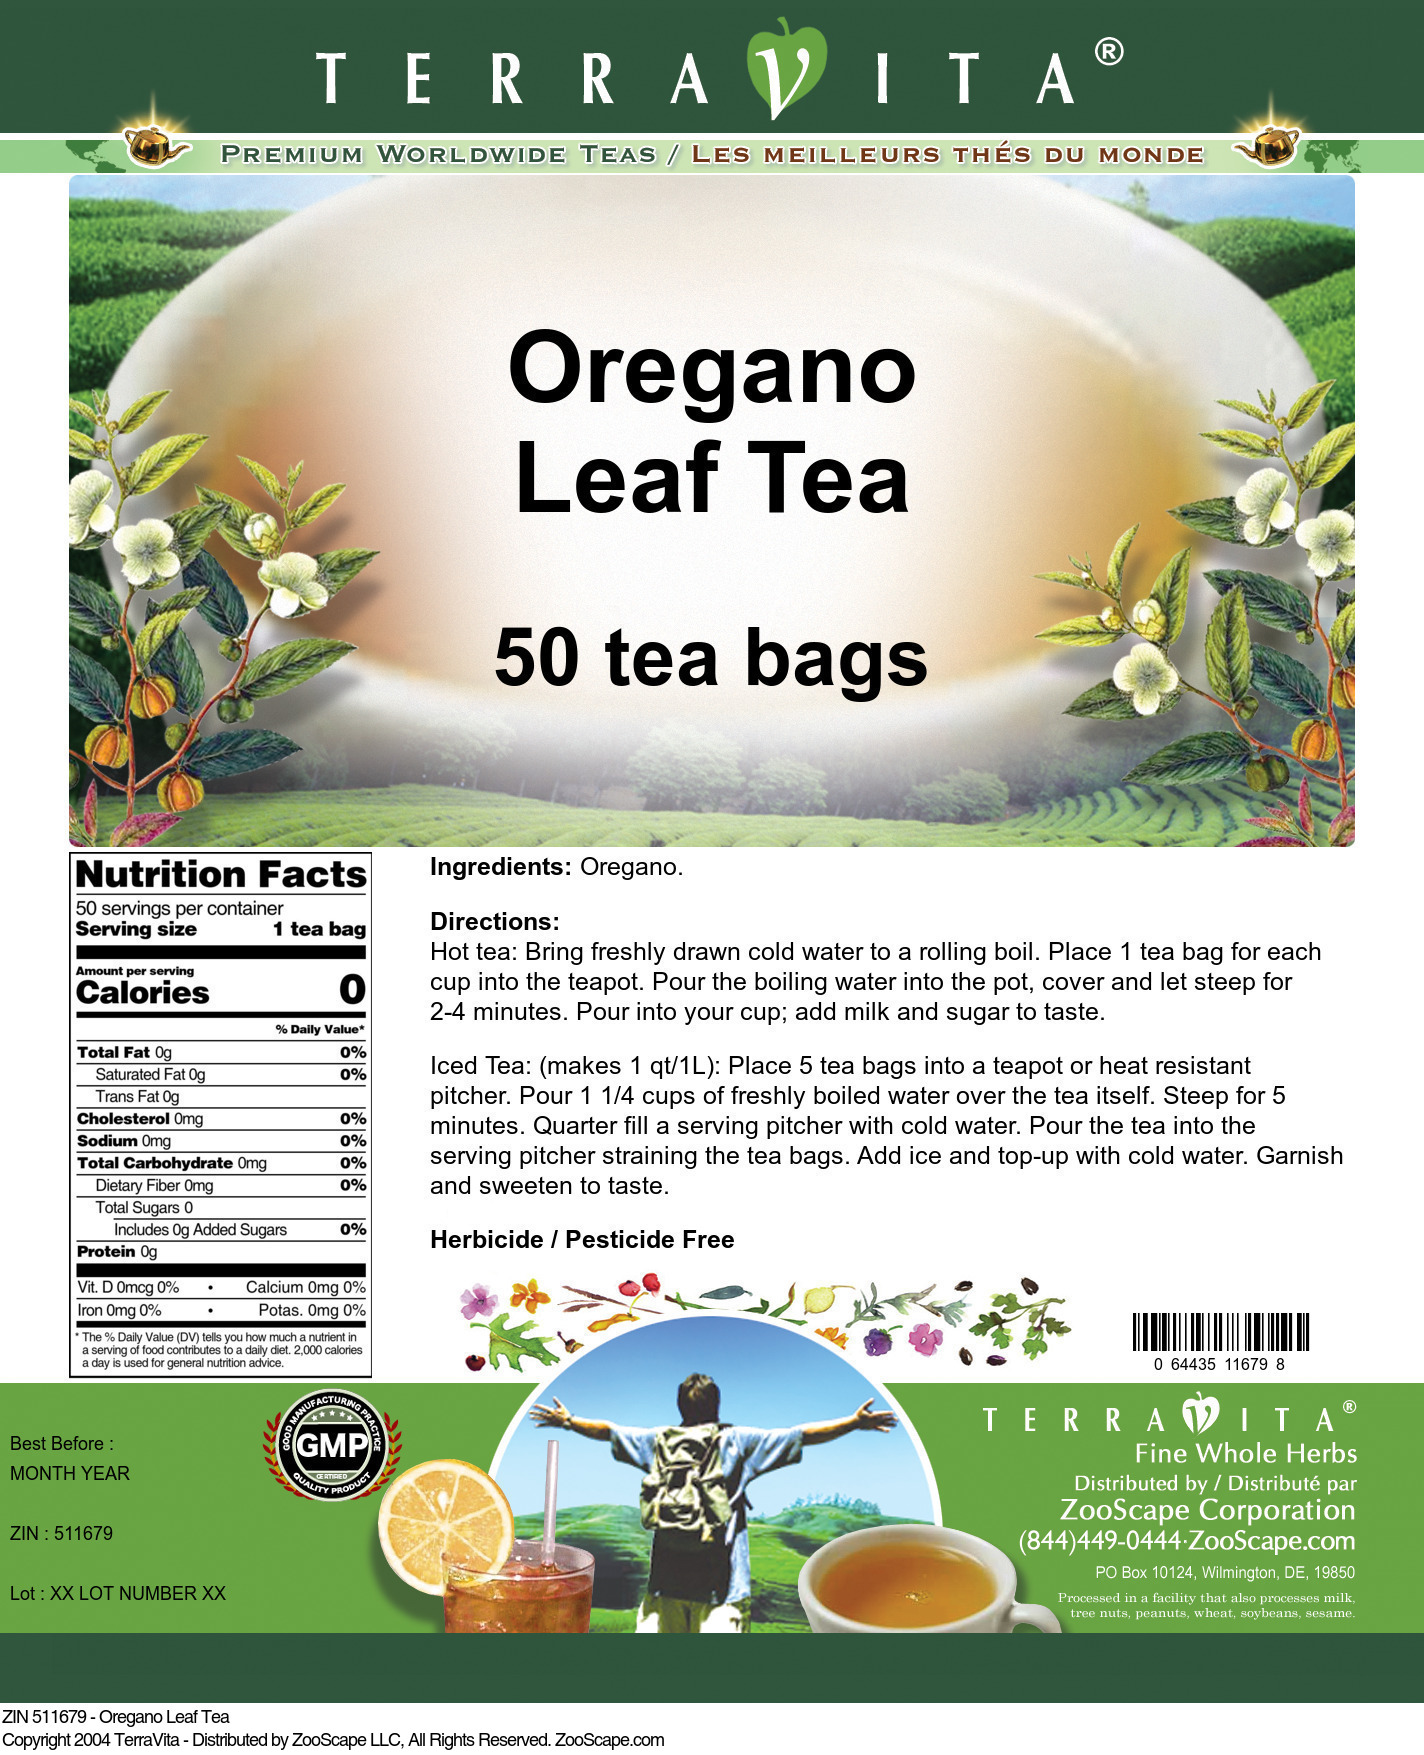 Oregano Leaf Tea - Label